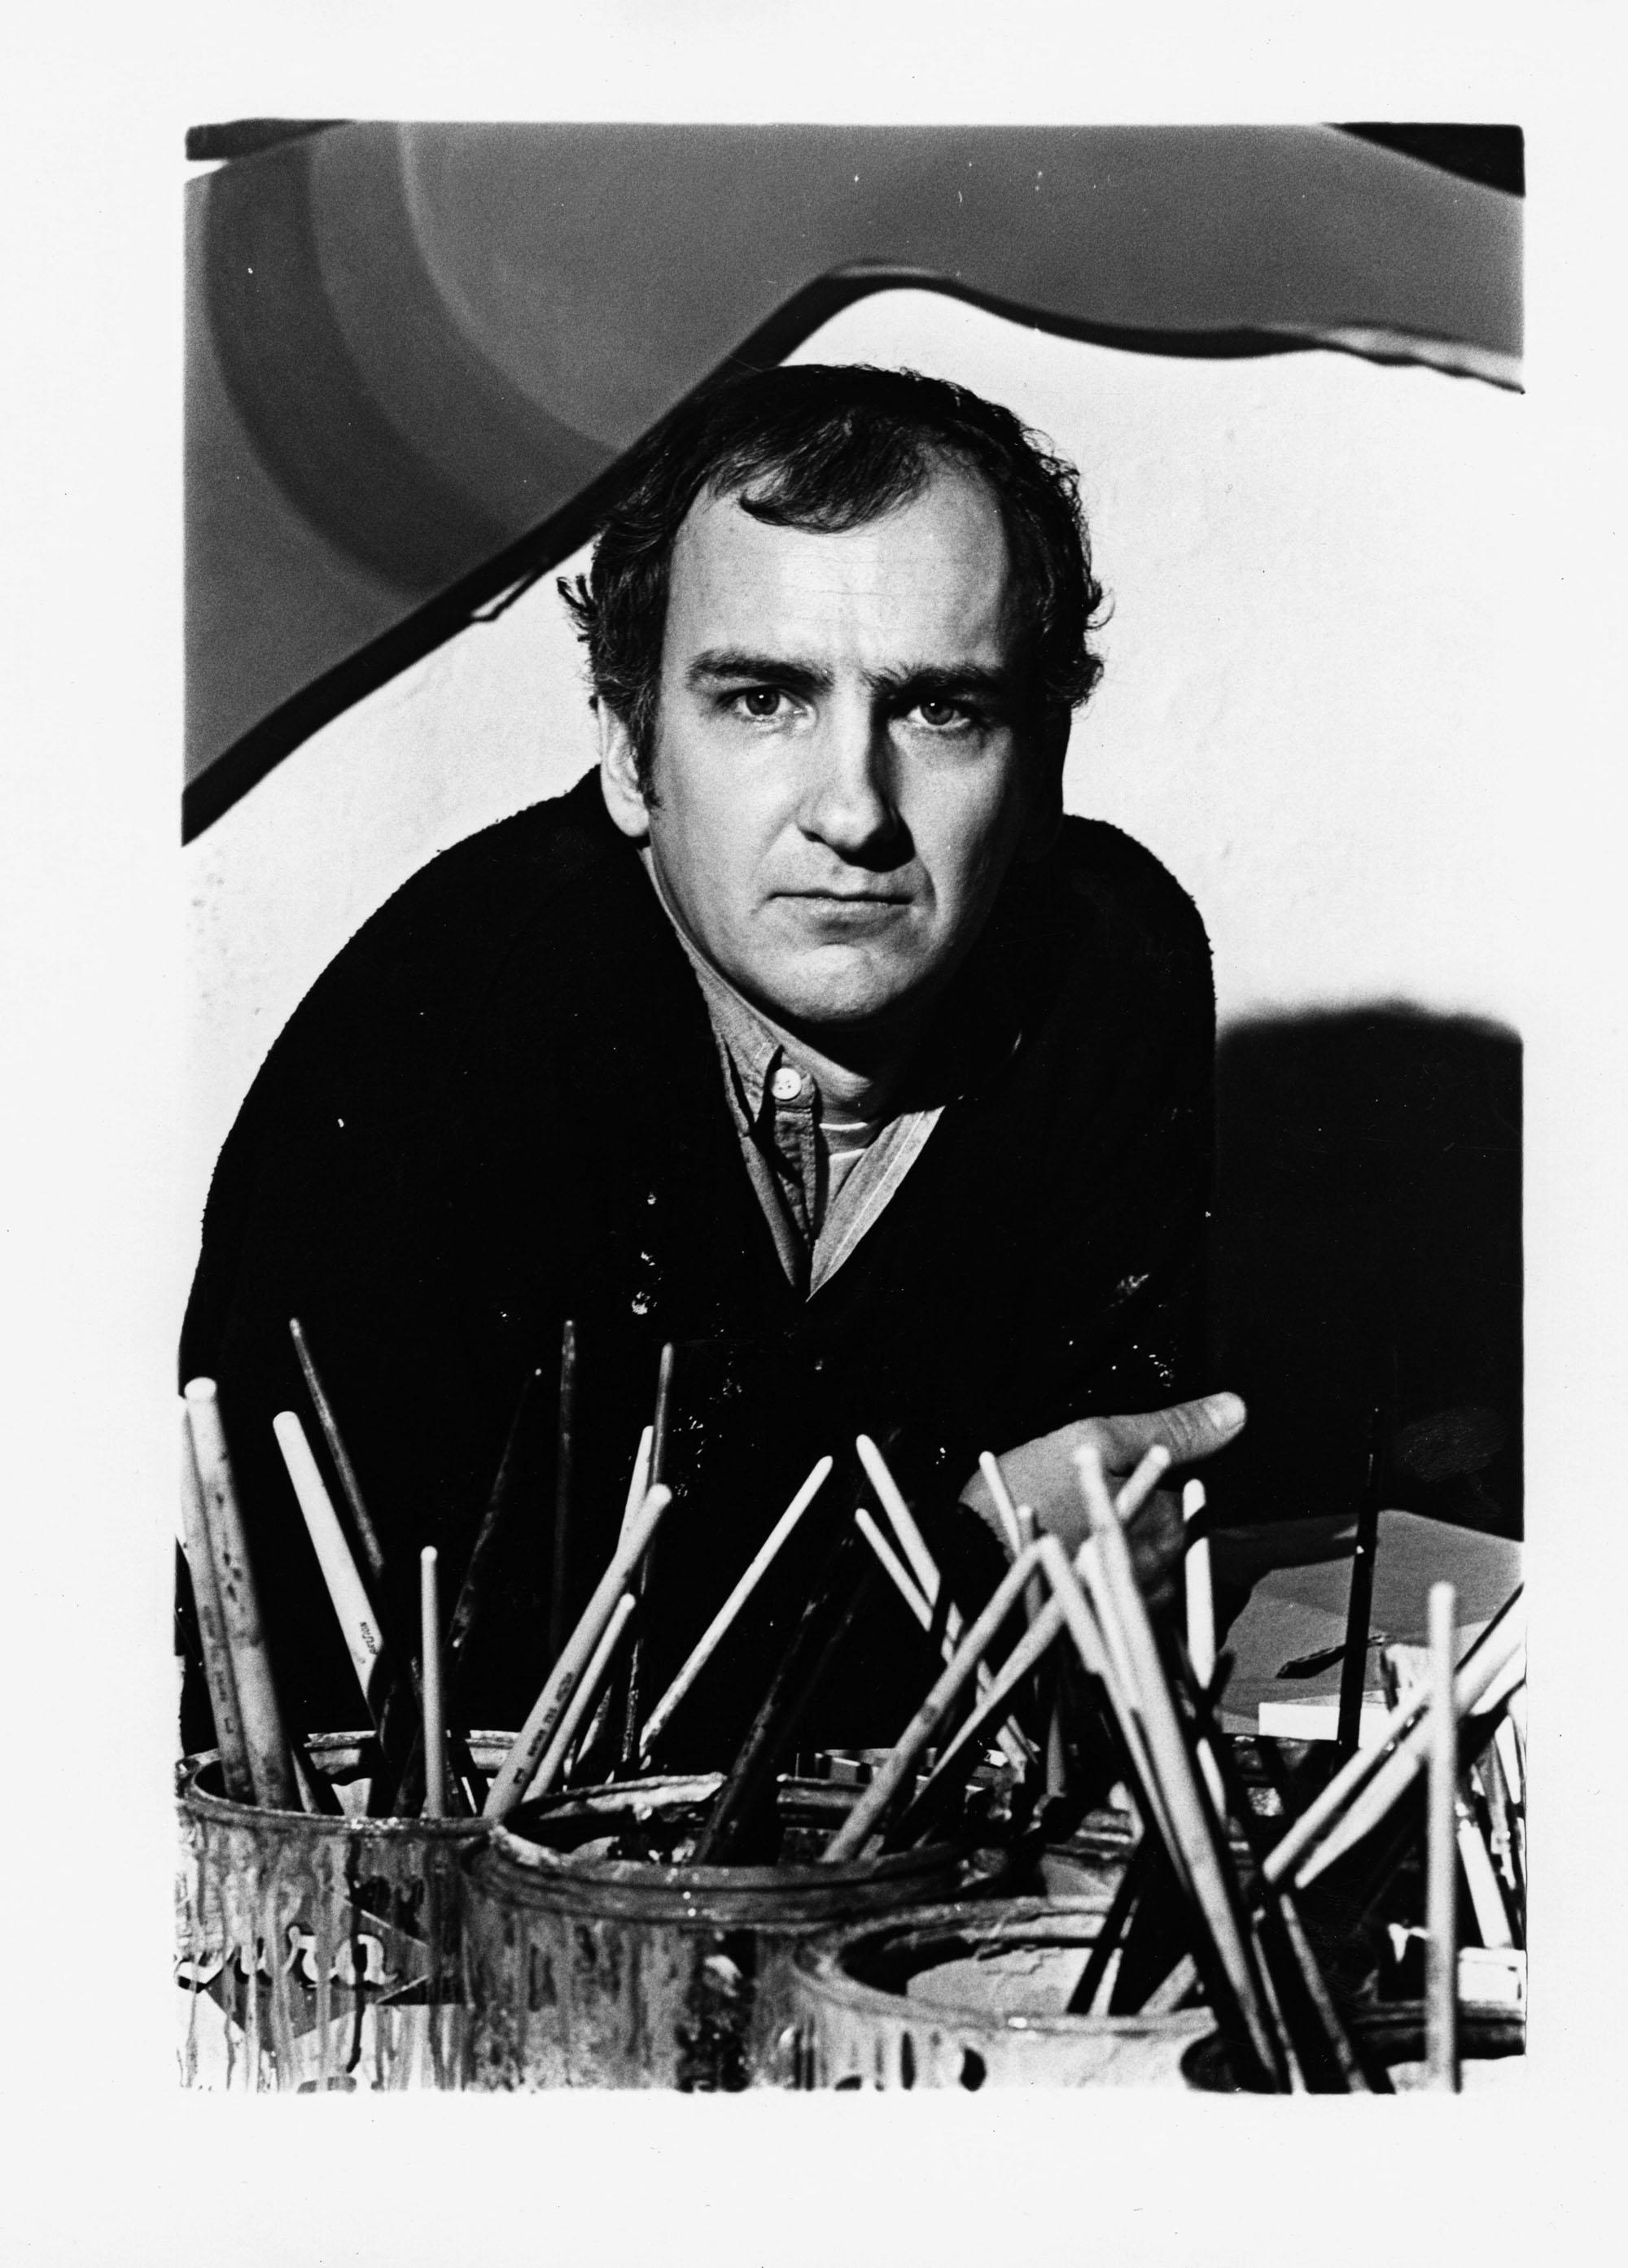 11 x 14" alte Silbergelatinefotografie des Künstlers Tom Wesselmann in seinem Atelier in New York City im Jahr 1969. Signiert von Jack Mitchell auf der Rückseite des Drucks. Kommt direkt aus dem Jack Mitchell Archiv mit einem